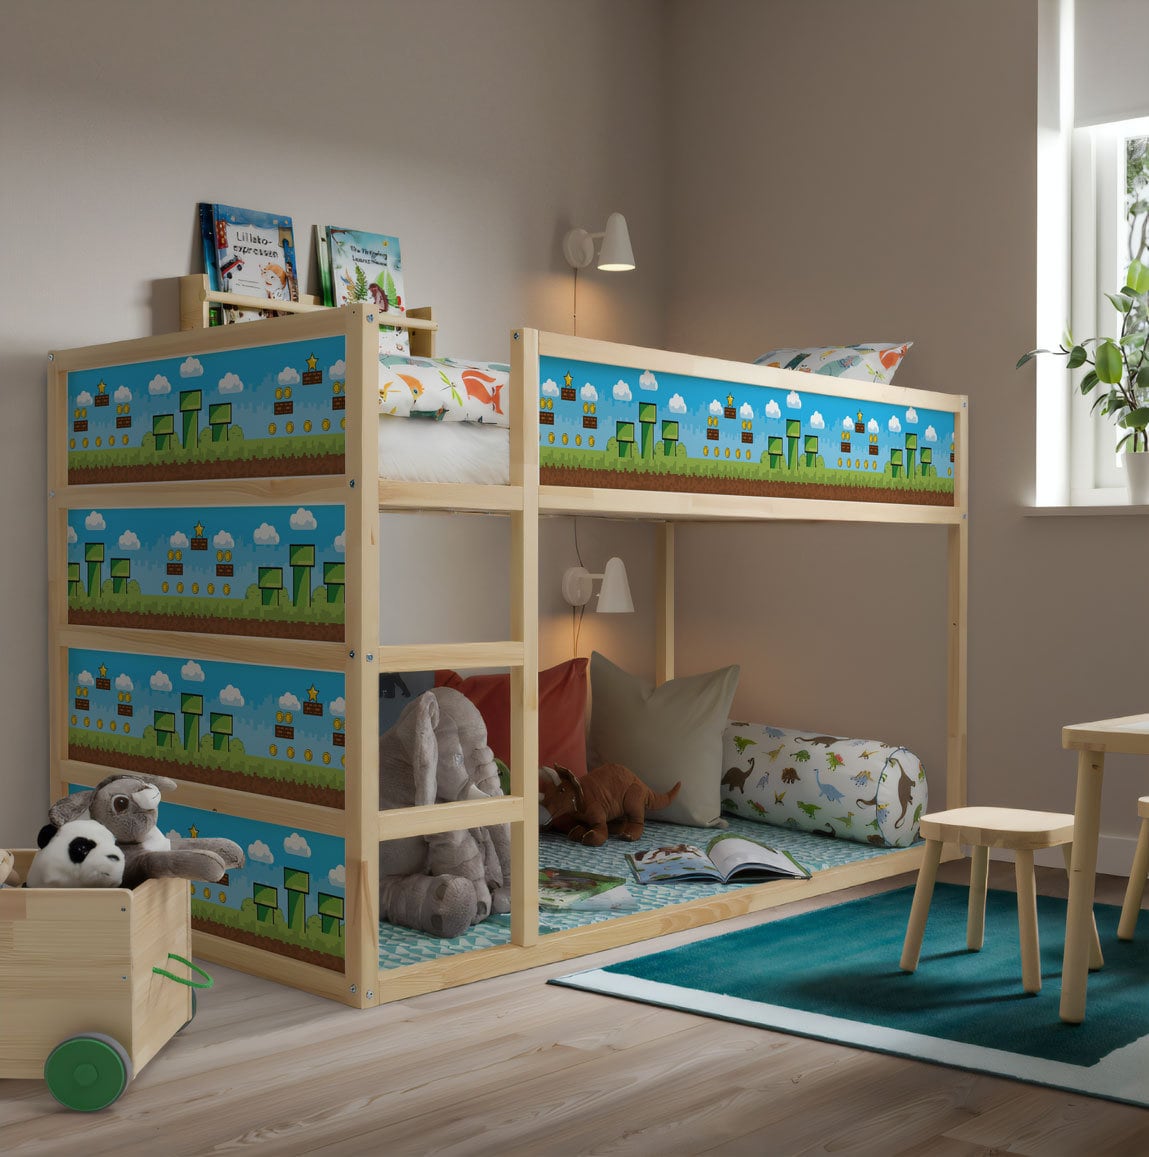 Verwaand Dwingend van mening zijn Mario Thema Kura Bed Sticker IKEA Mario Kura Bed Decal voor - Etsy België